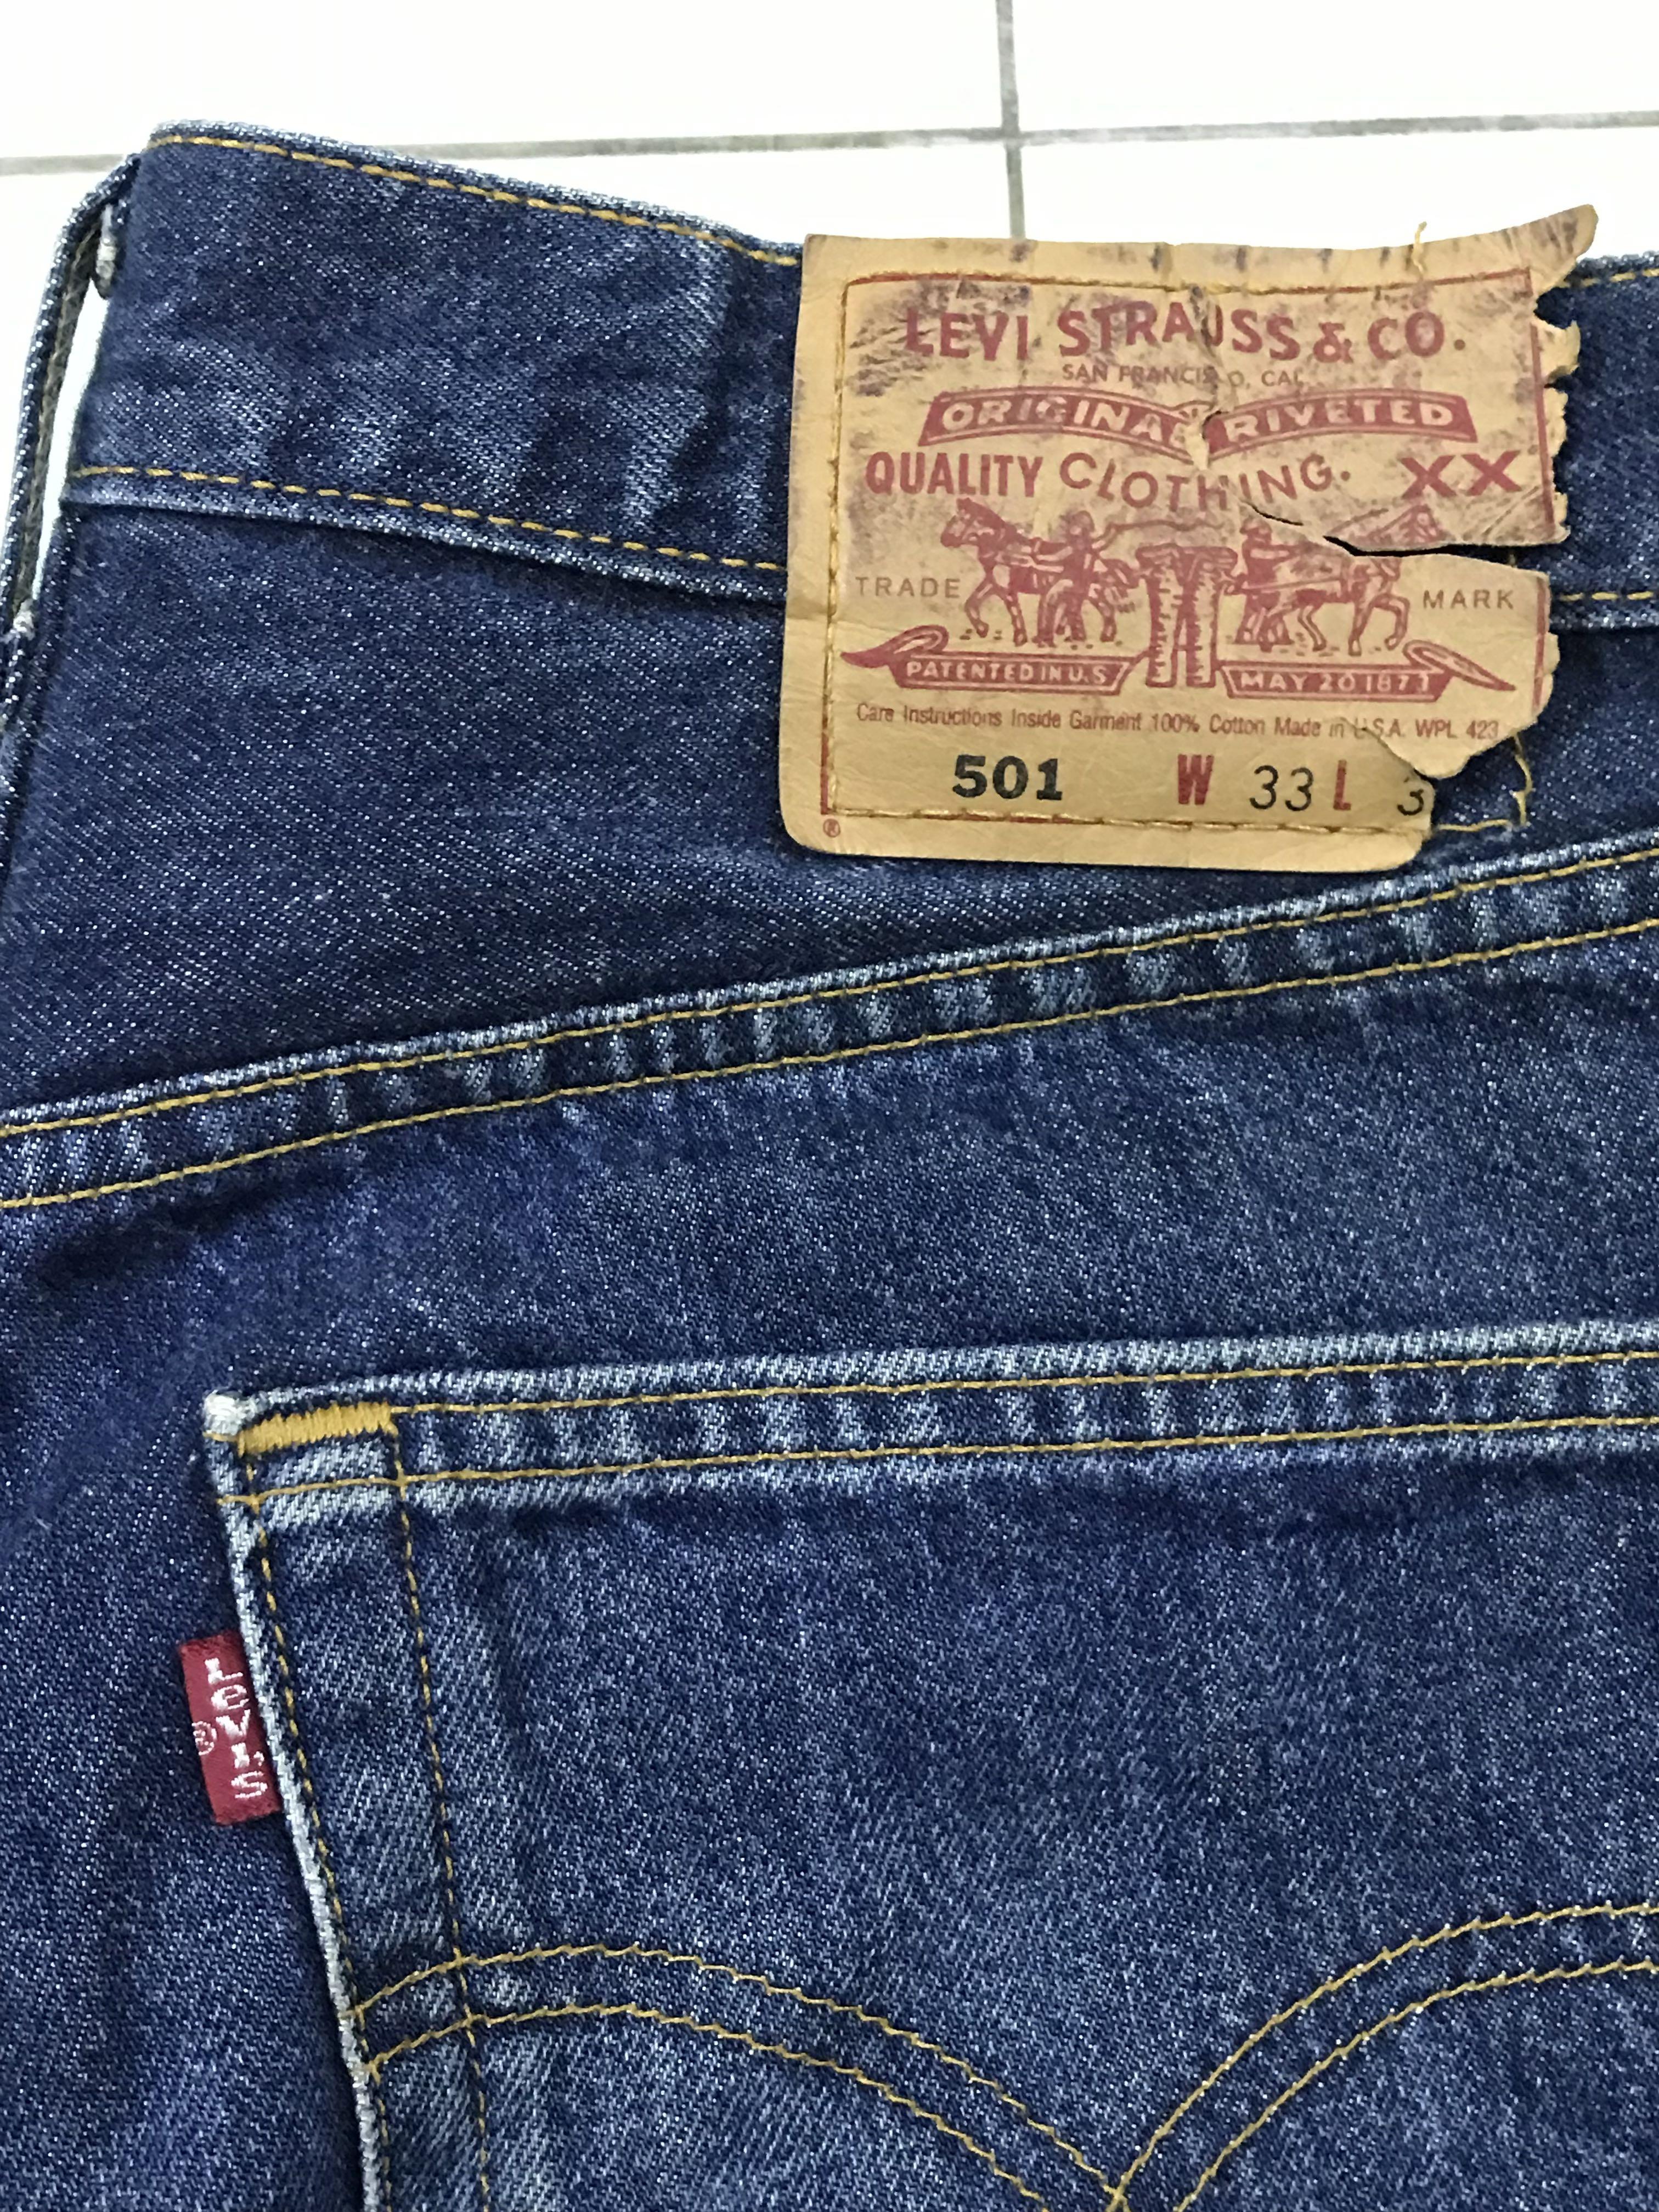 Levis 501 USA 90s Vintage Jeans Denim, Men's Fashion, Bottoms